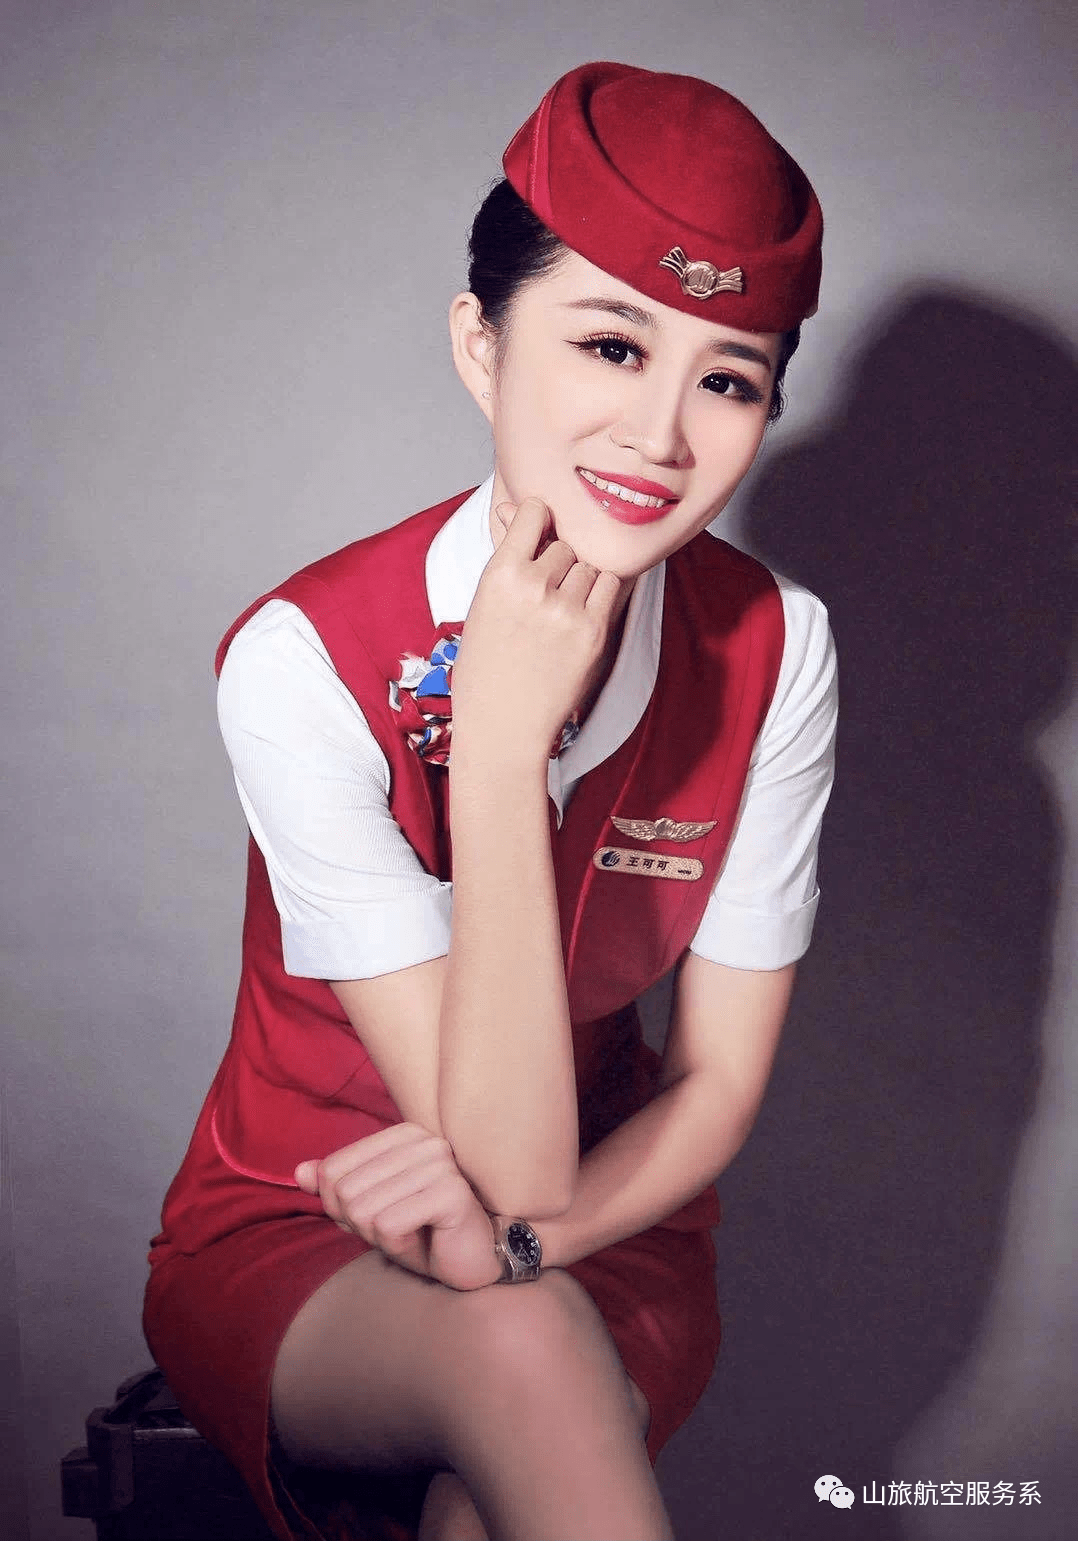 我院空中乘务专业学生就业于青岛航空公司四,联系我们热诚欢迎广大